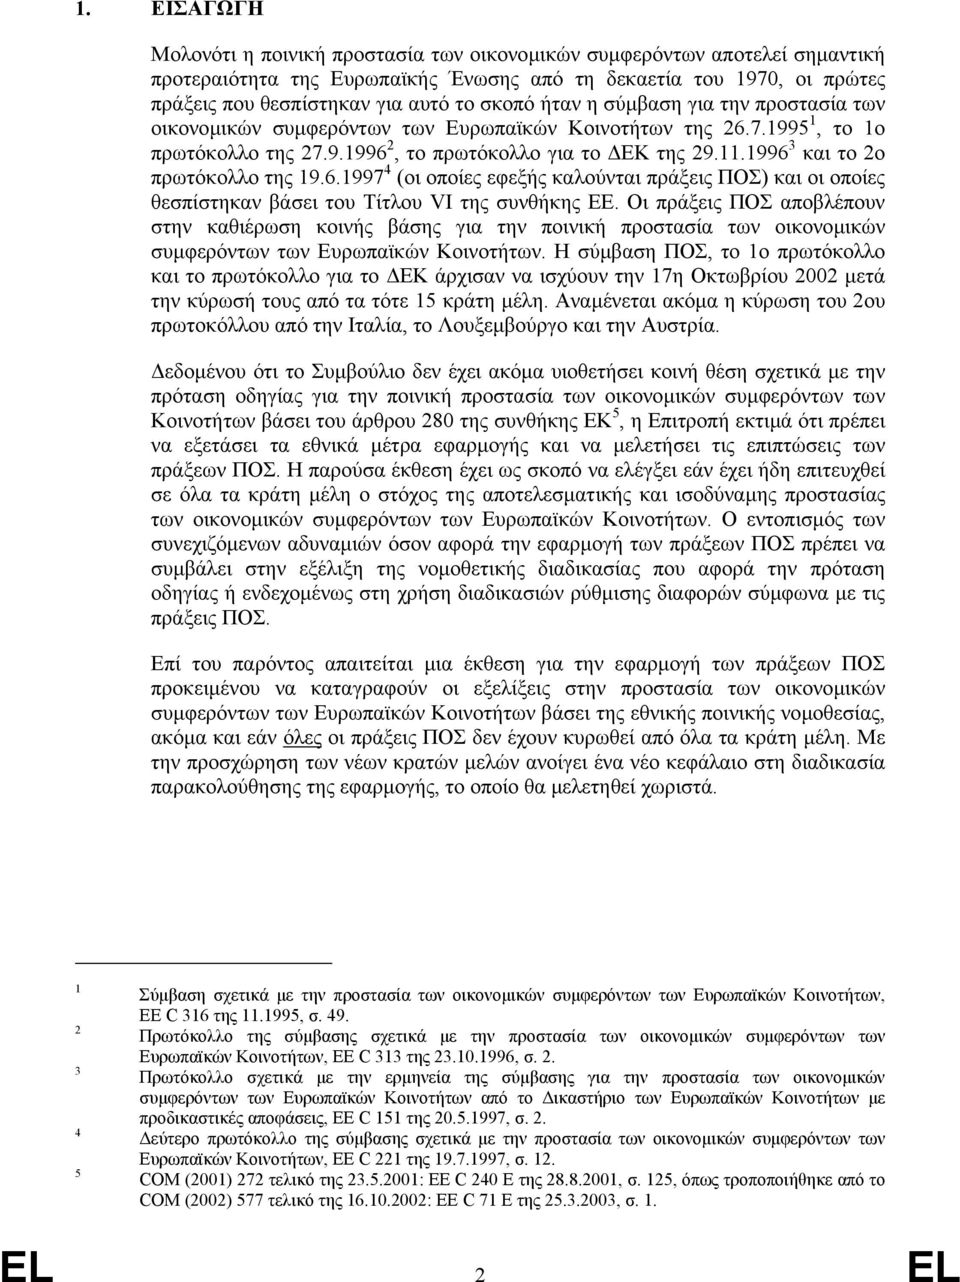 1996 3 και το 2ο πρωτόκολλο της 19.6.1997 4 (οι οποίες εφεξής καλούνται πράξεις ΠΟΣ) και οι οποίες θεσπίστηκαν βάσει του Τίτλου VI της συνθήκης ΕΕ.